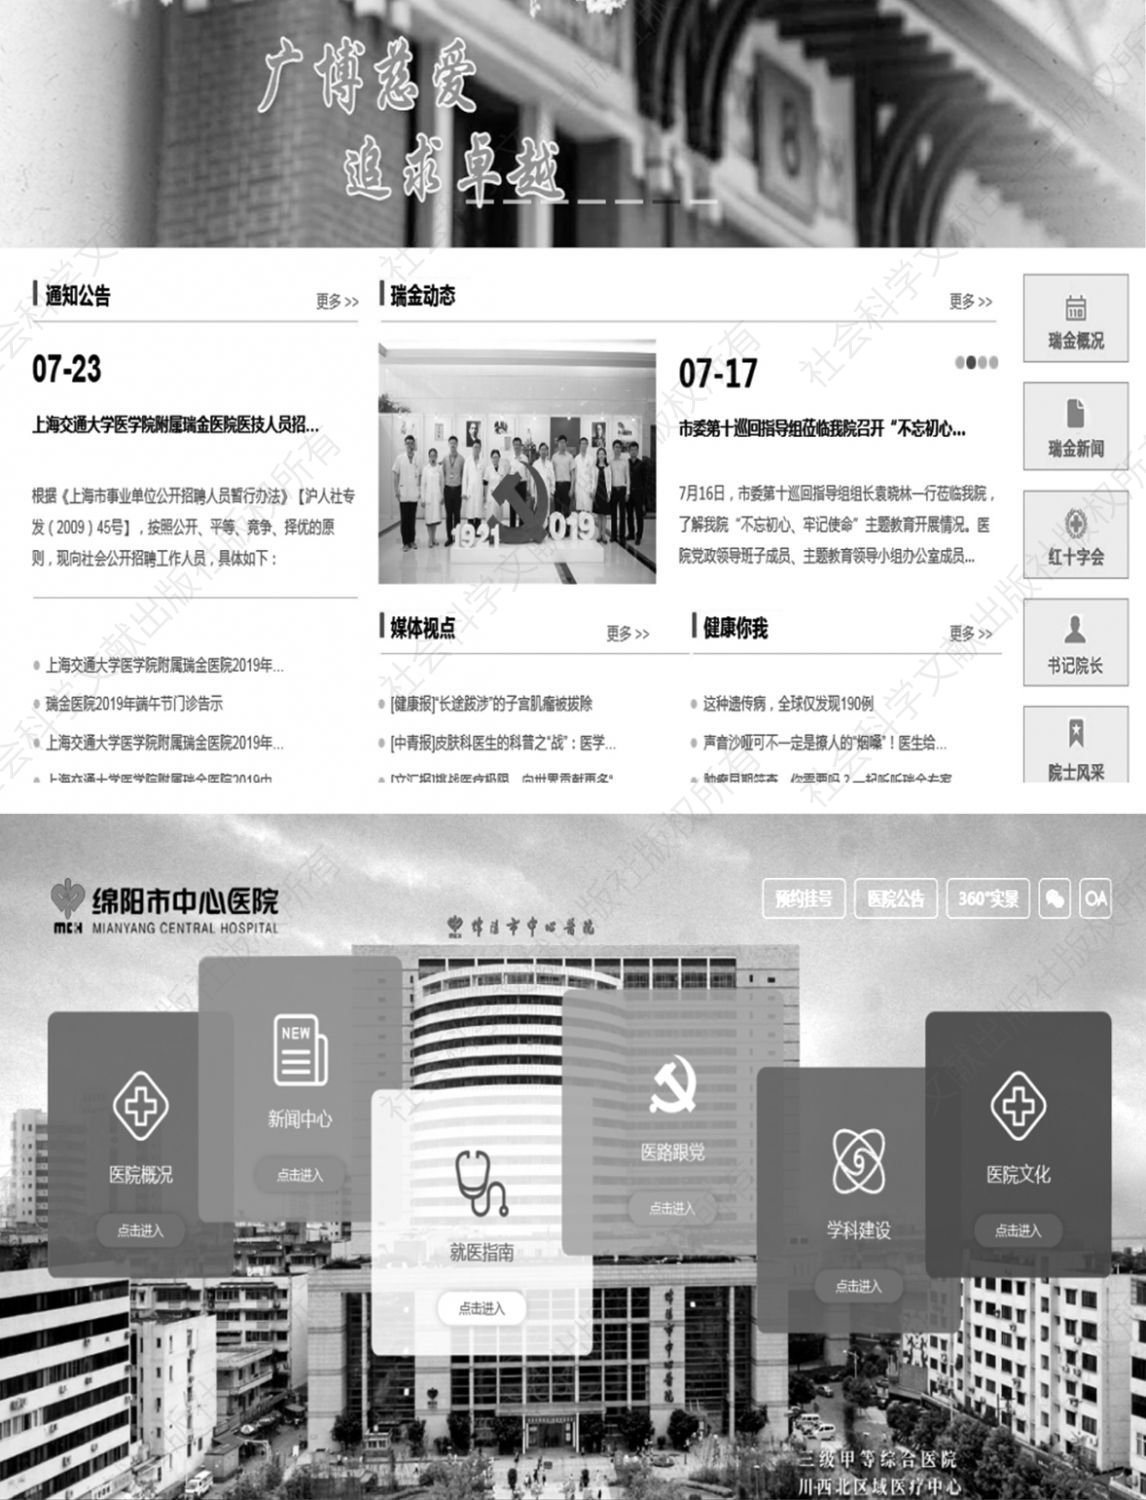 图7 上海瑞金医院官网首页和绵阳市中心医院官网首页